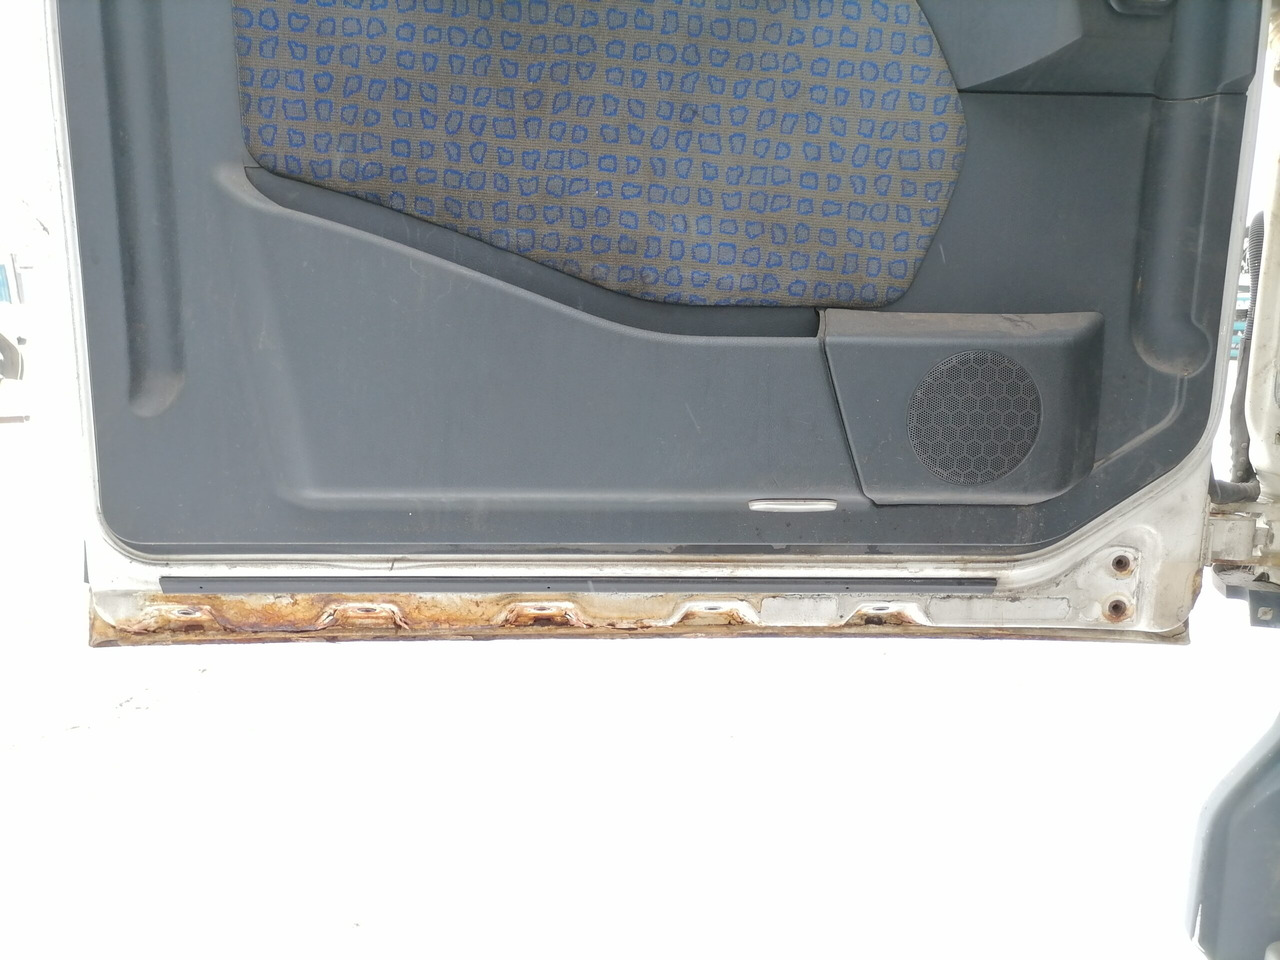 Cabine e interior de Caminhão MAN Cab TG460: foto 11